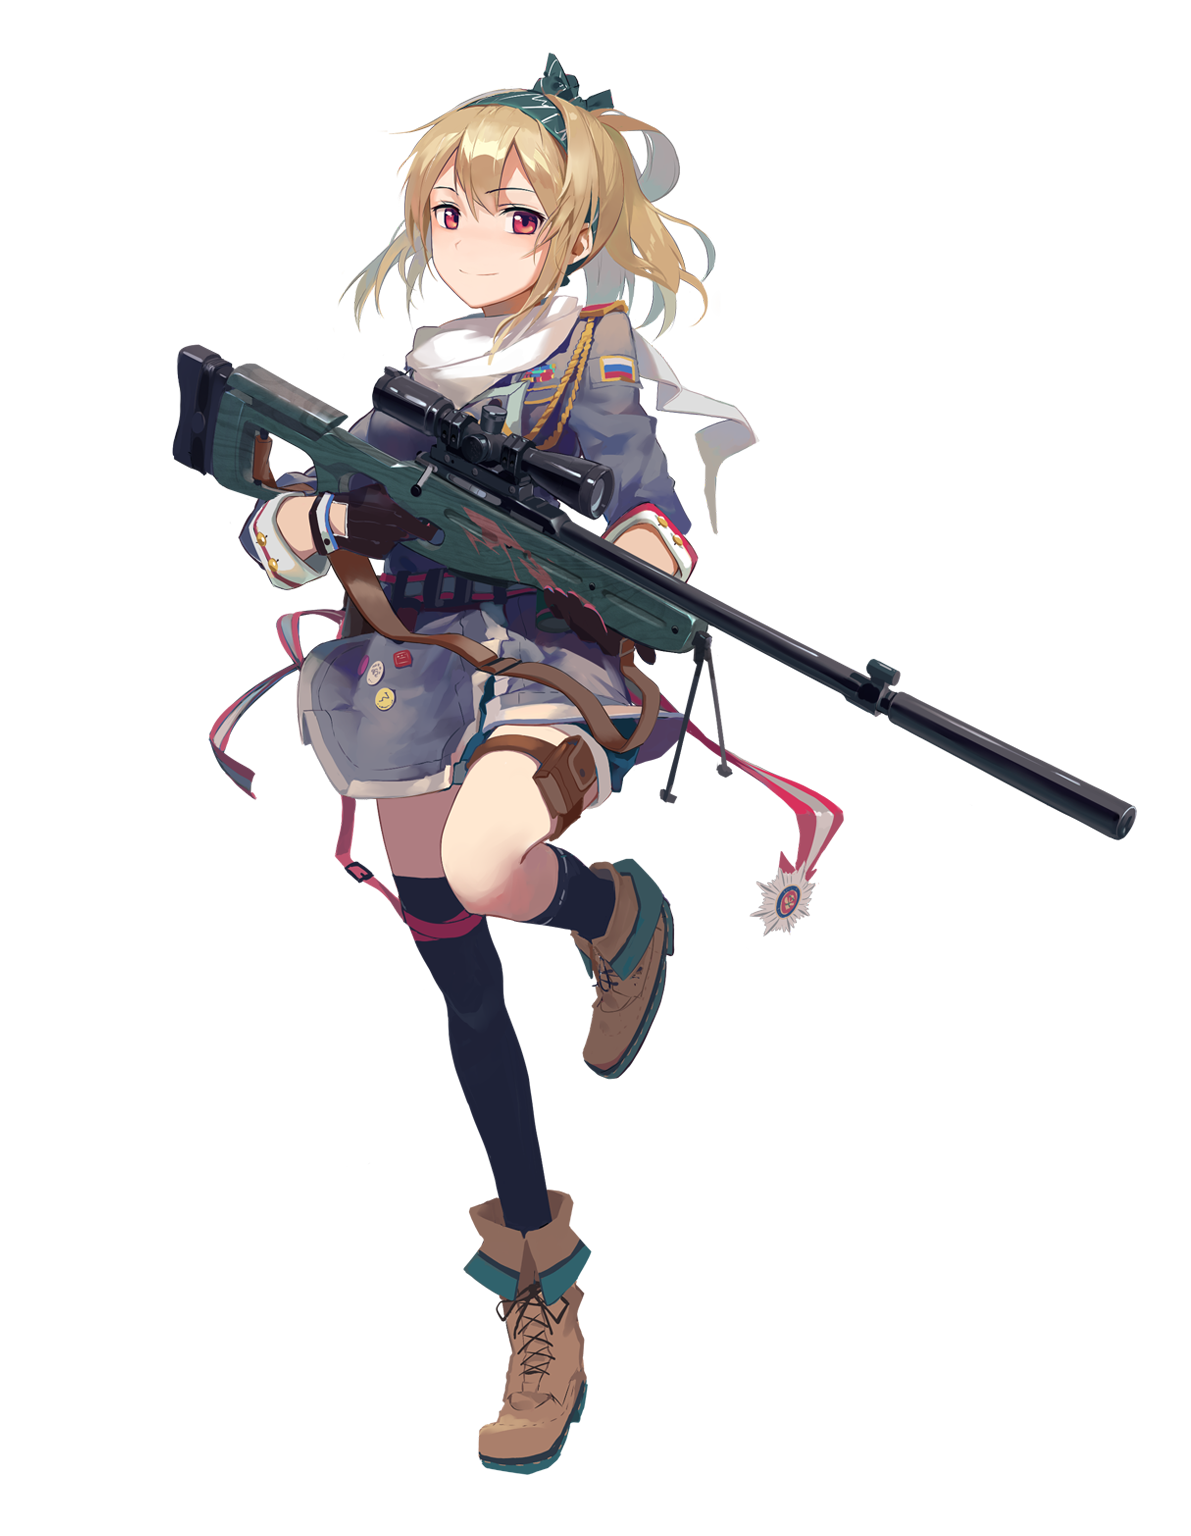 SV-98狙擊步槍(手遊《少女前線》中登場的角色)